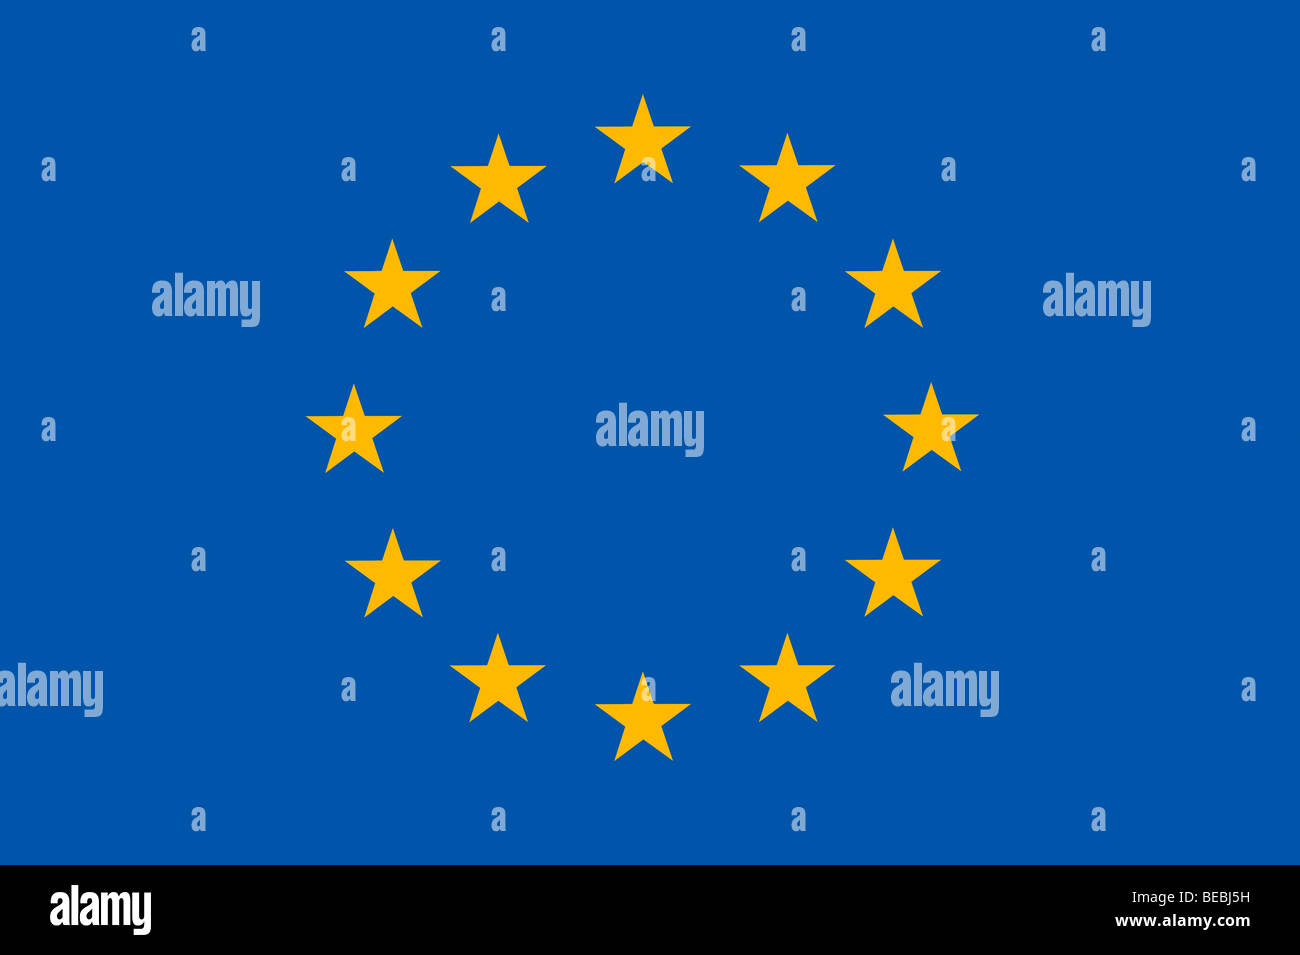 Ilustración de la bandera de la Unión Europea Foto de stock